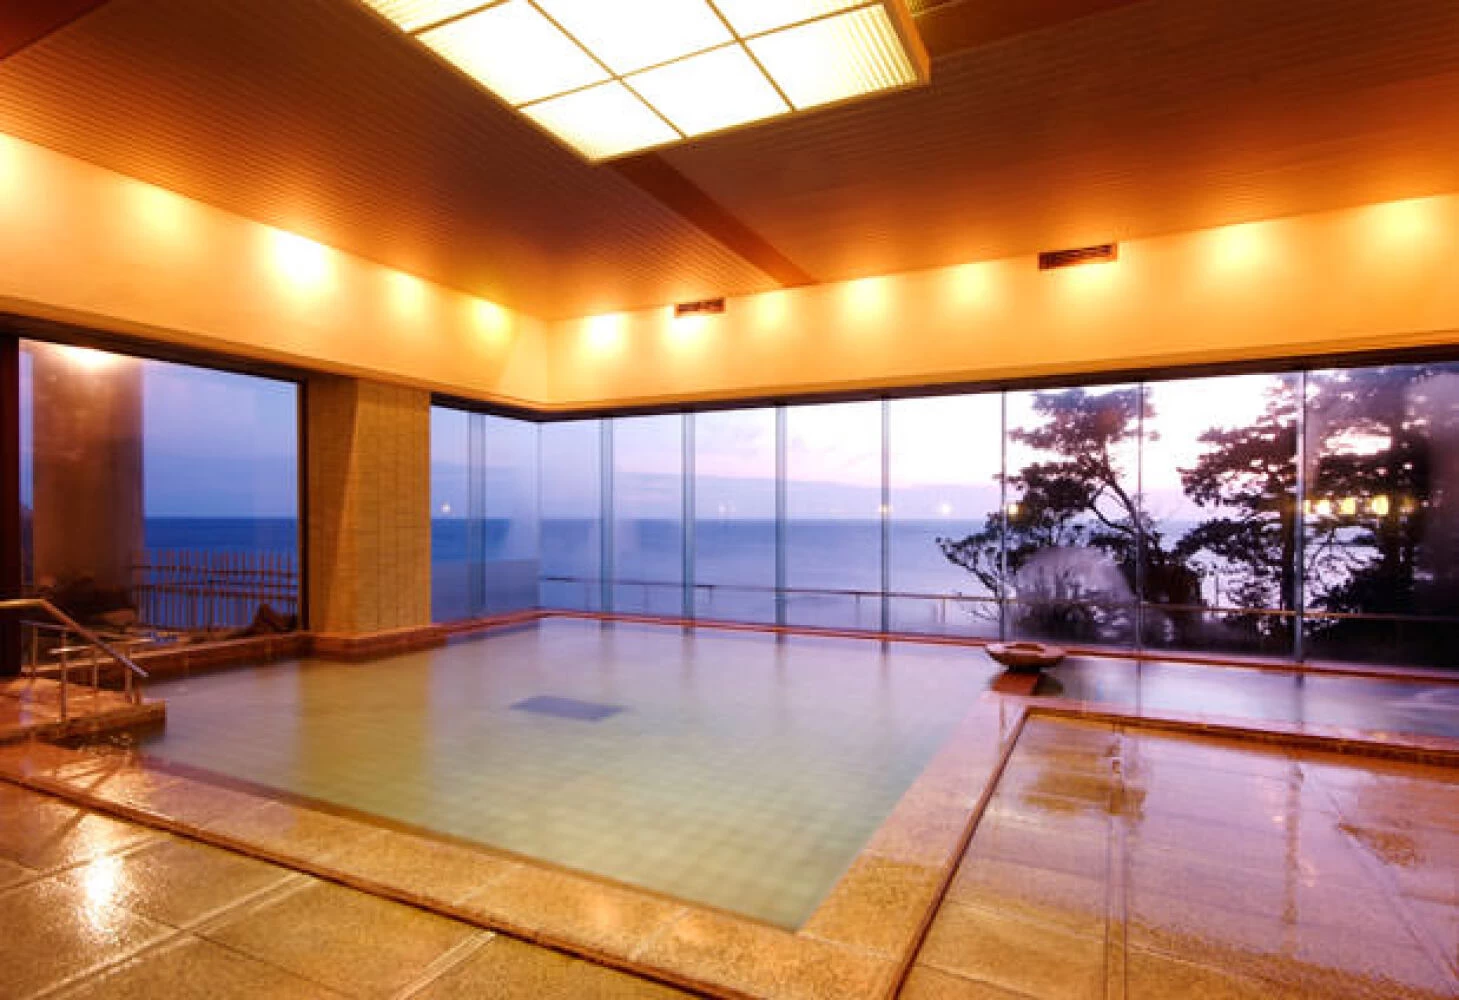 日本海をガラス越しに眺め過ごす至福の時間